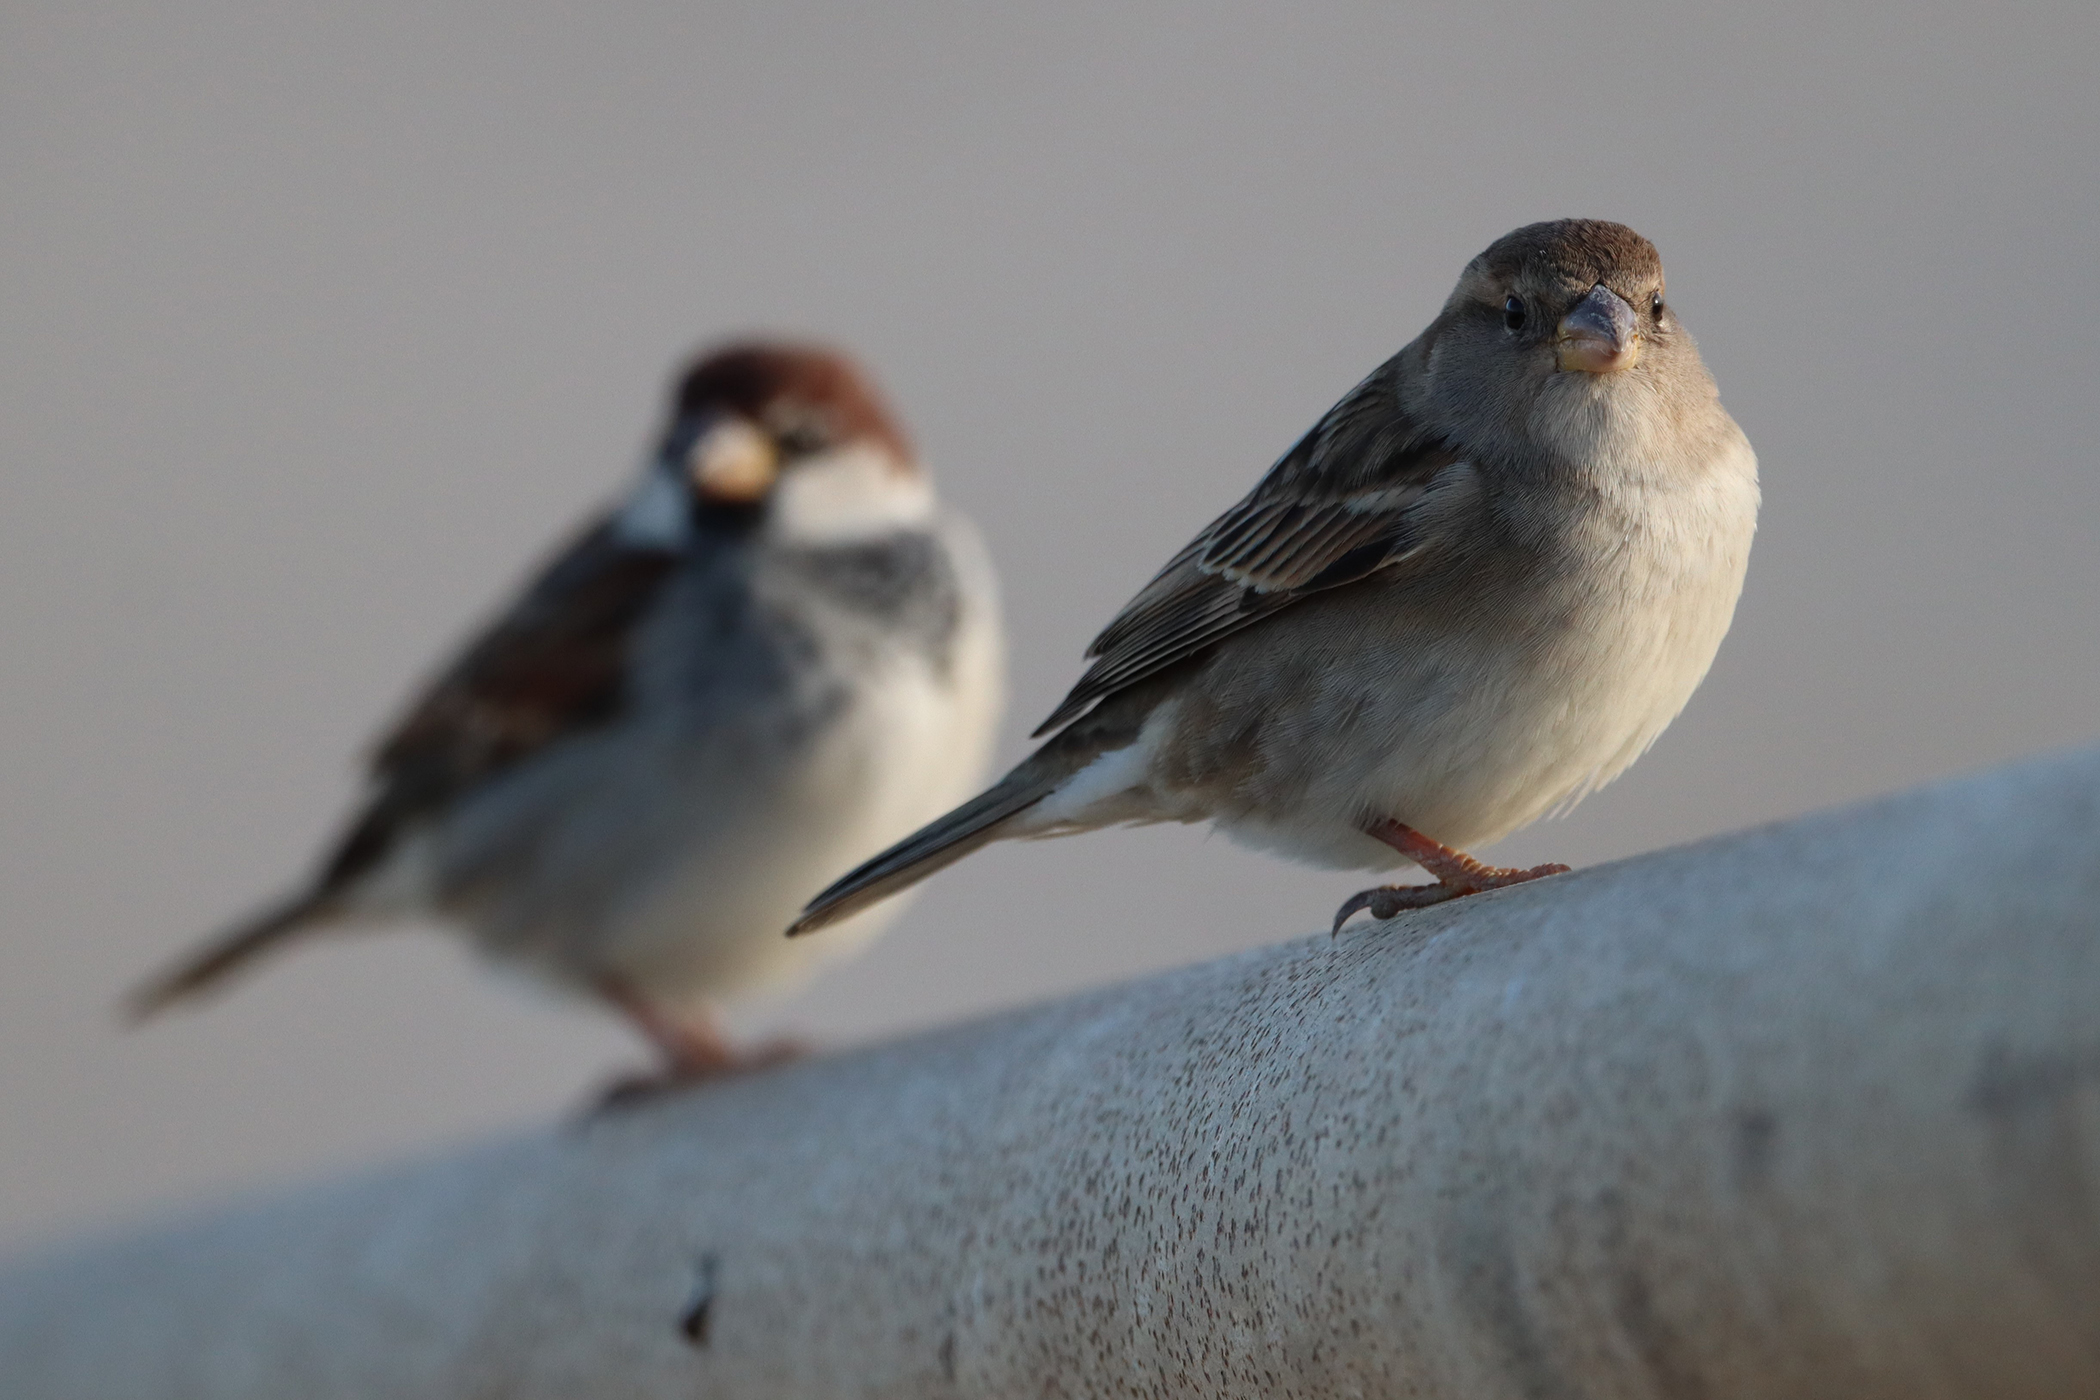 Female Sparrow...